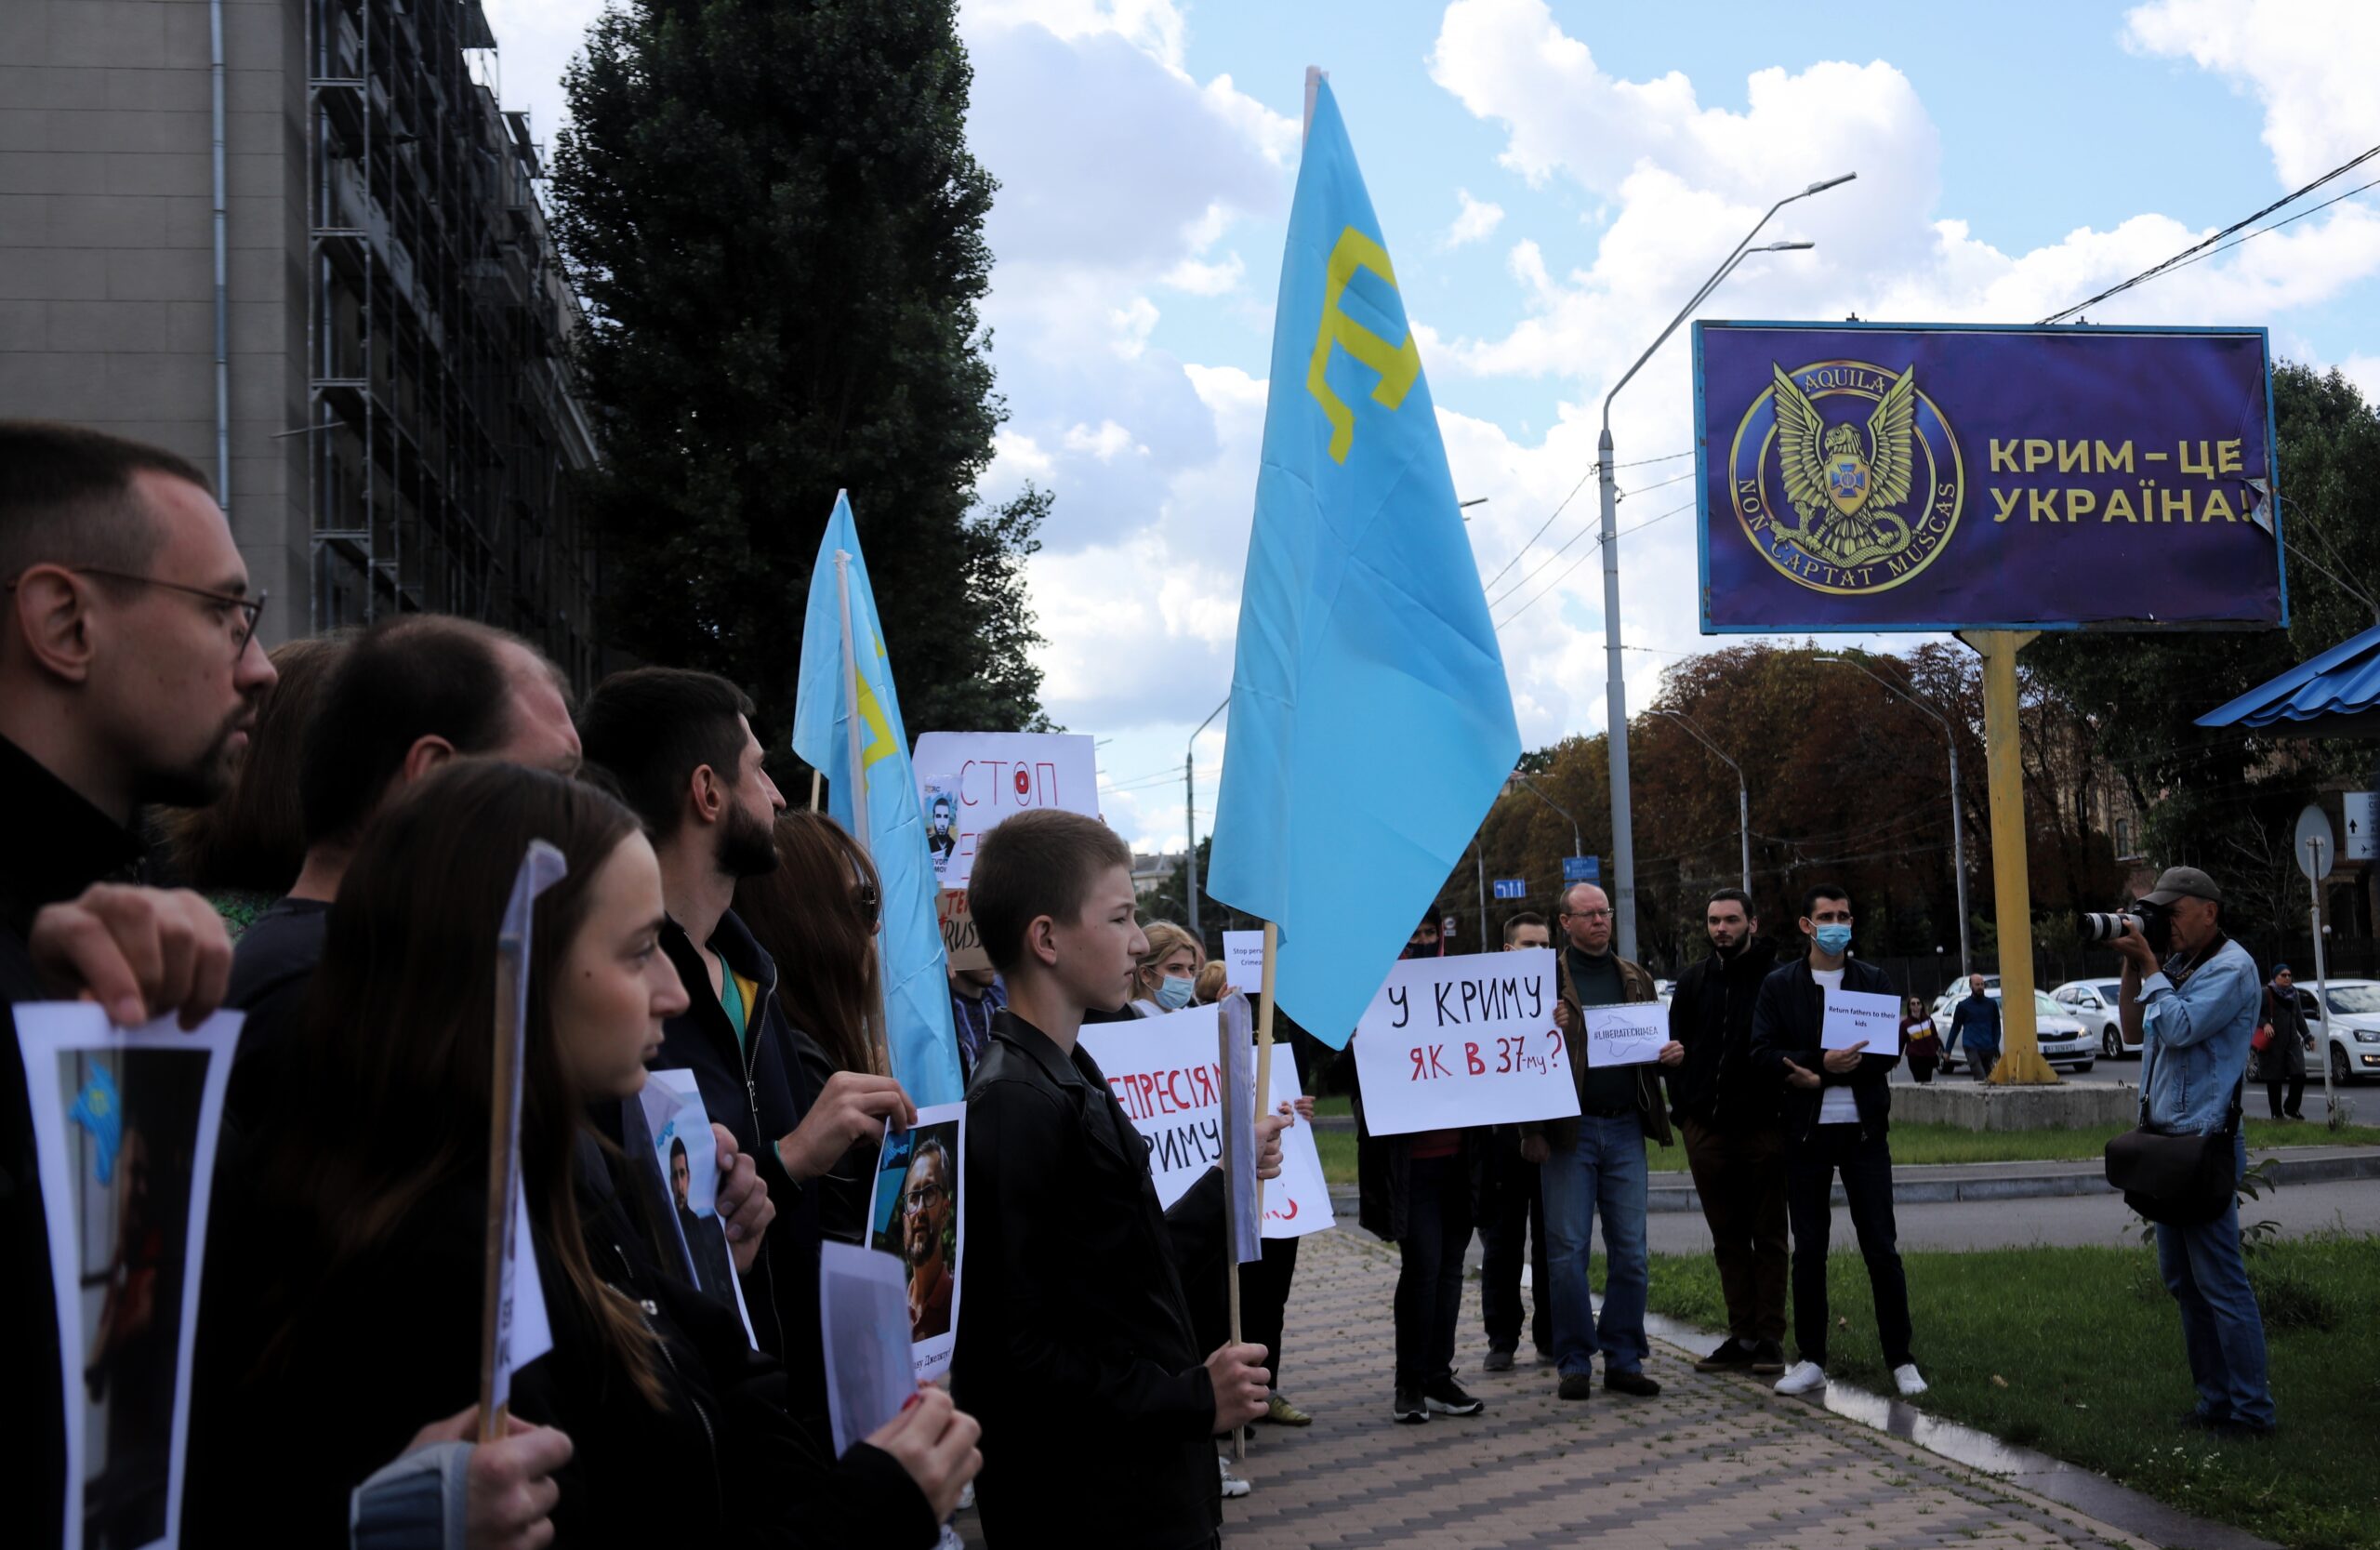 Сьогодні відзначають День кримськотатарського прапора — символа свободи у найскрутніші часи